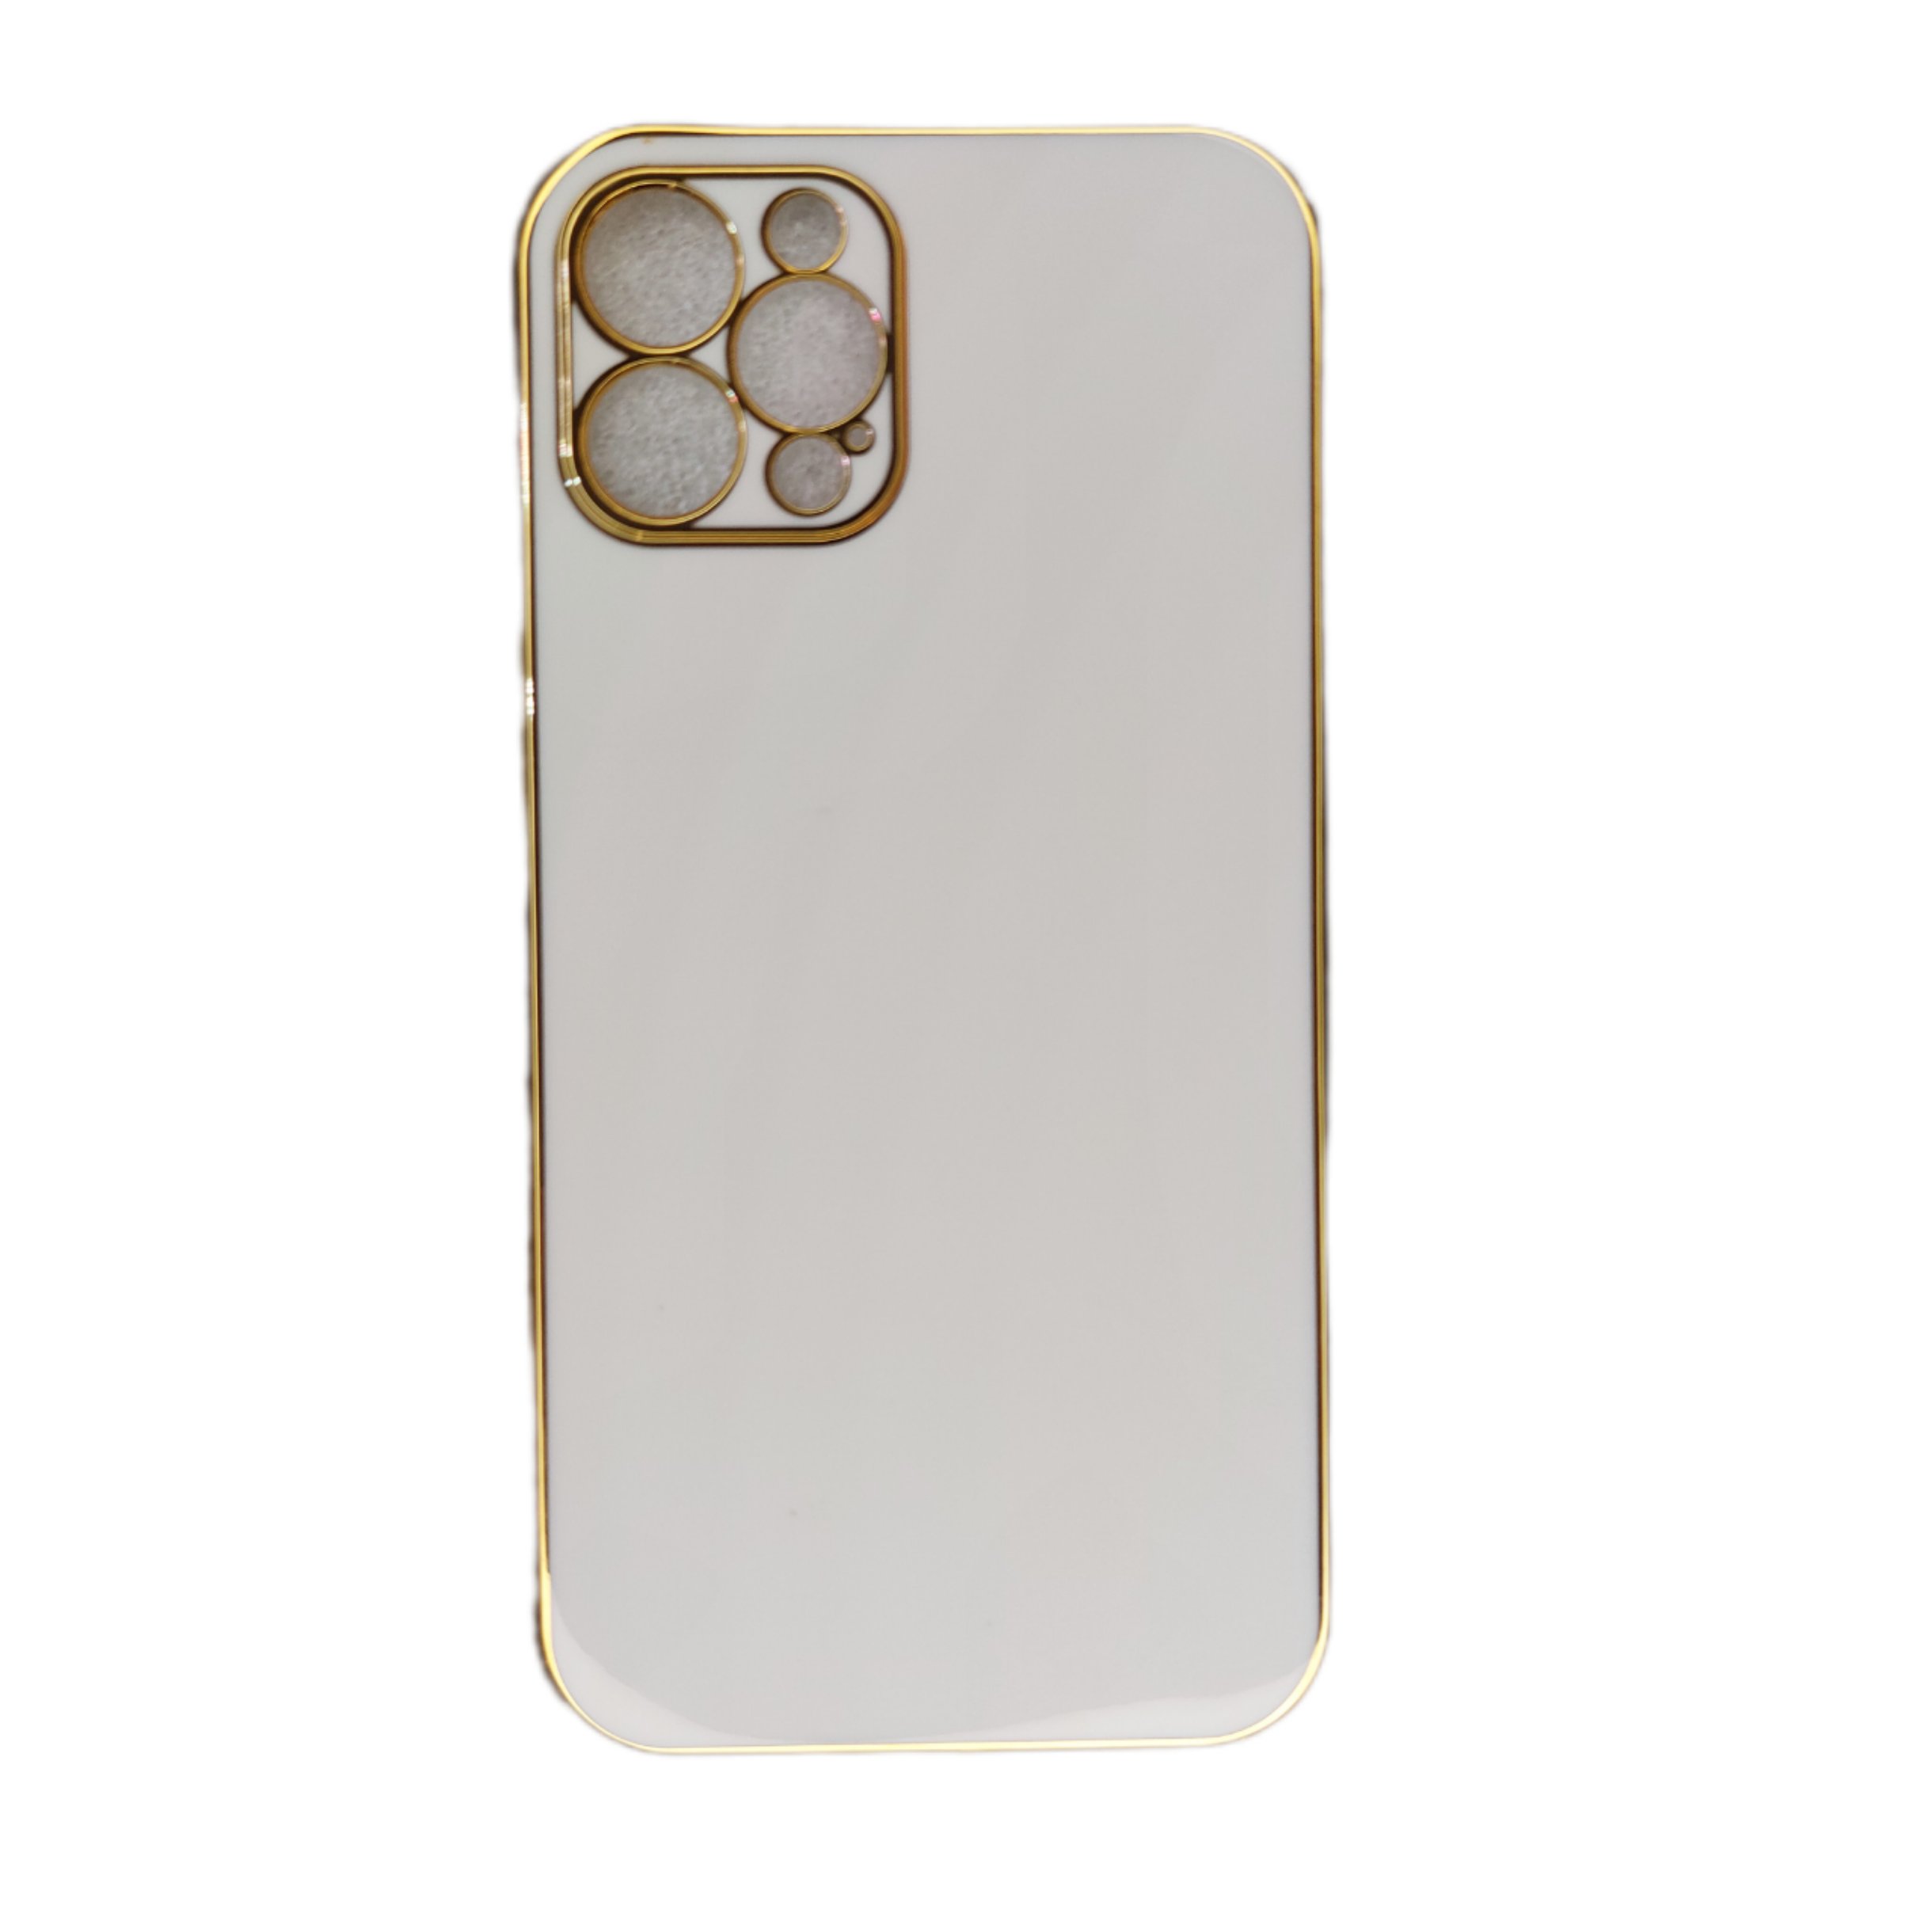 کاور مدل mycase مناسب برای گوشی موبایل اپل IPhone 12 pro